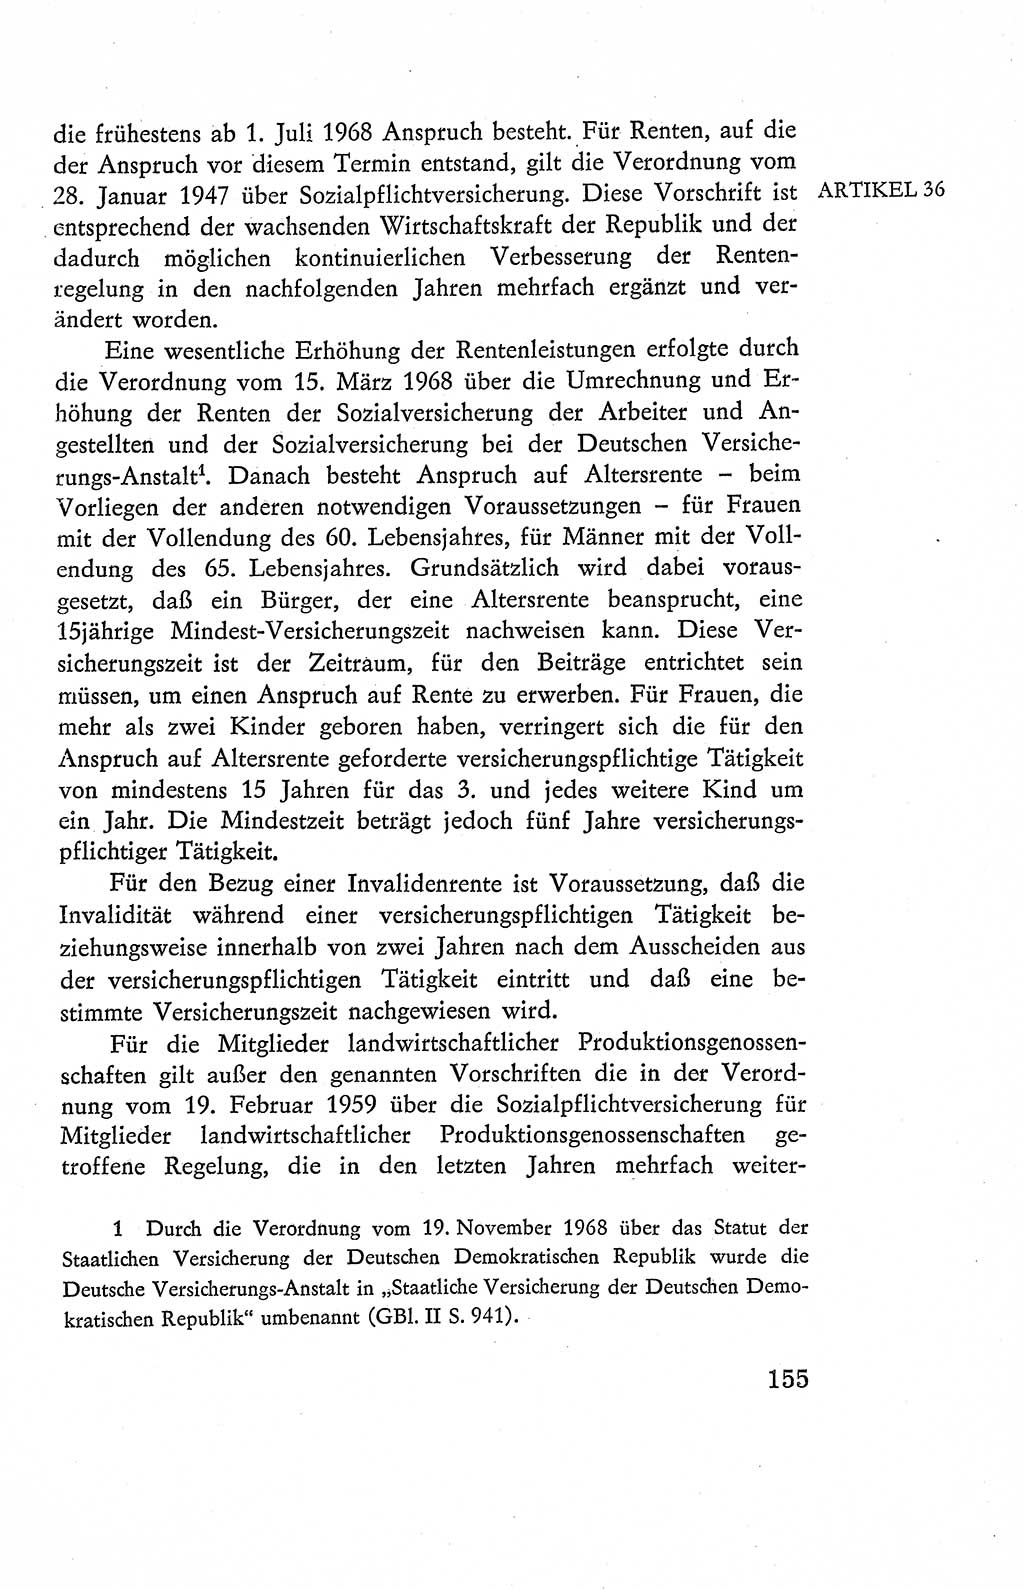 Verfassung der Deutschen Demokratischen Republik (DDR), Dokumente, Kommentar 1969, Band 2, Seite 155 (Verf. DDR Dok. Komm. 1969, Bd. 2, S. 155)